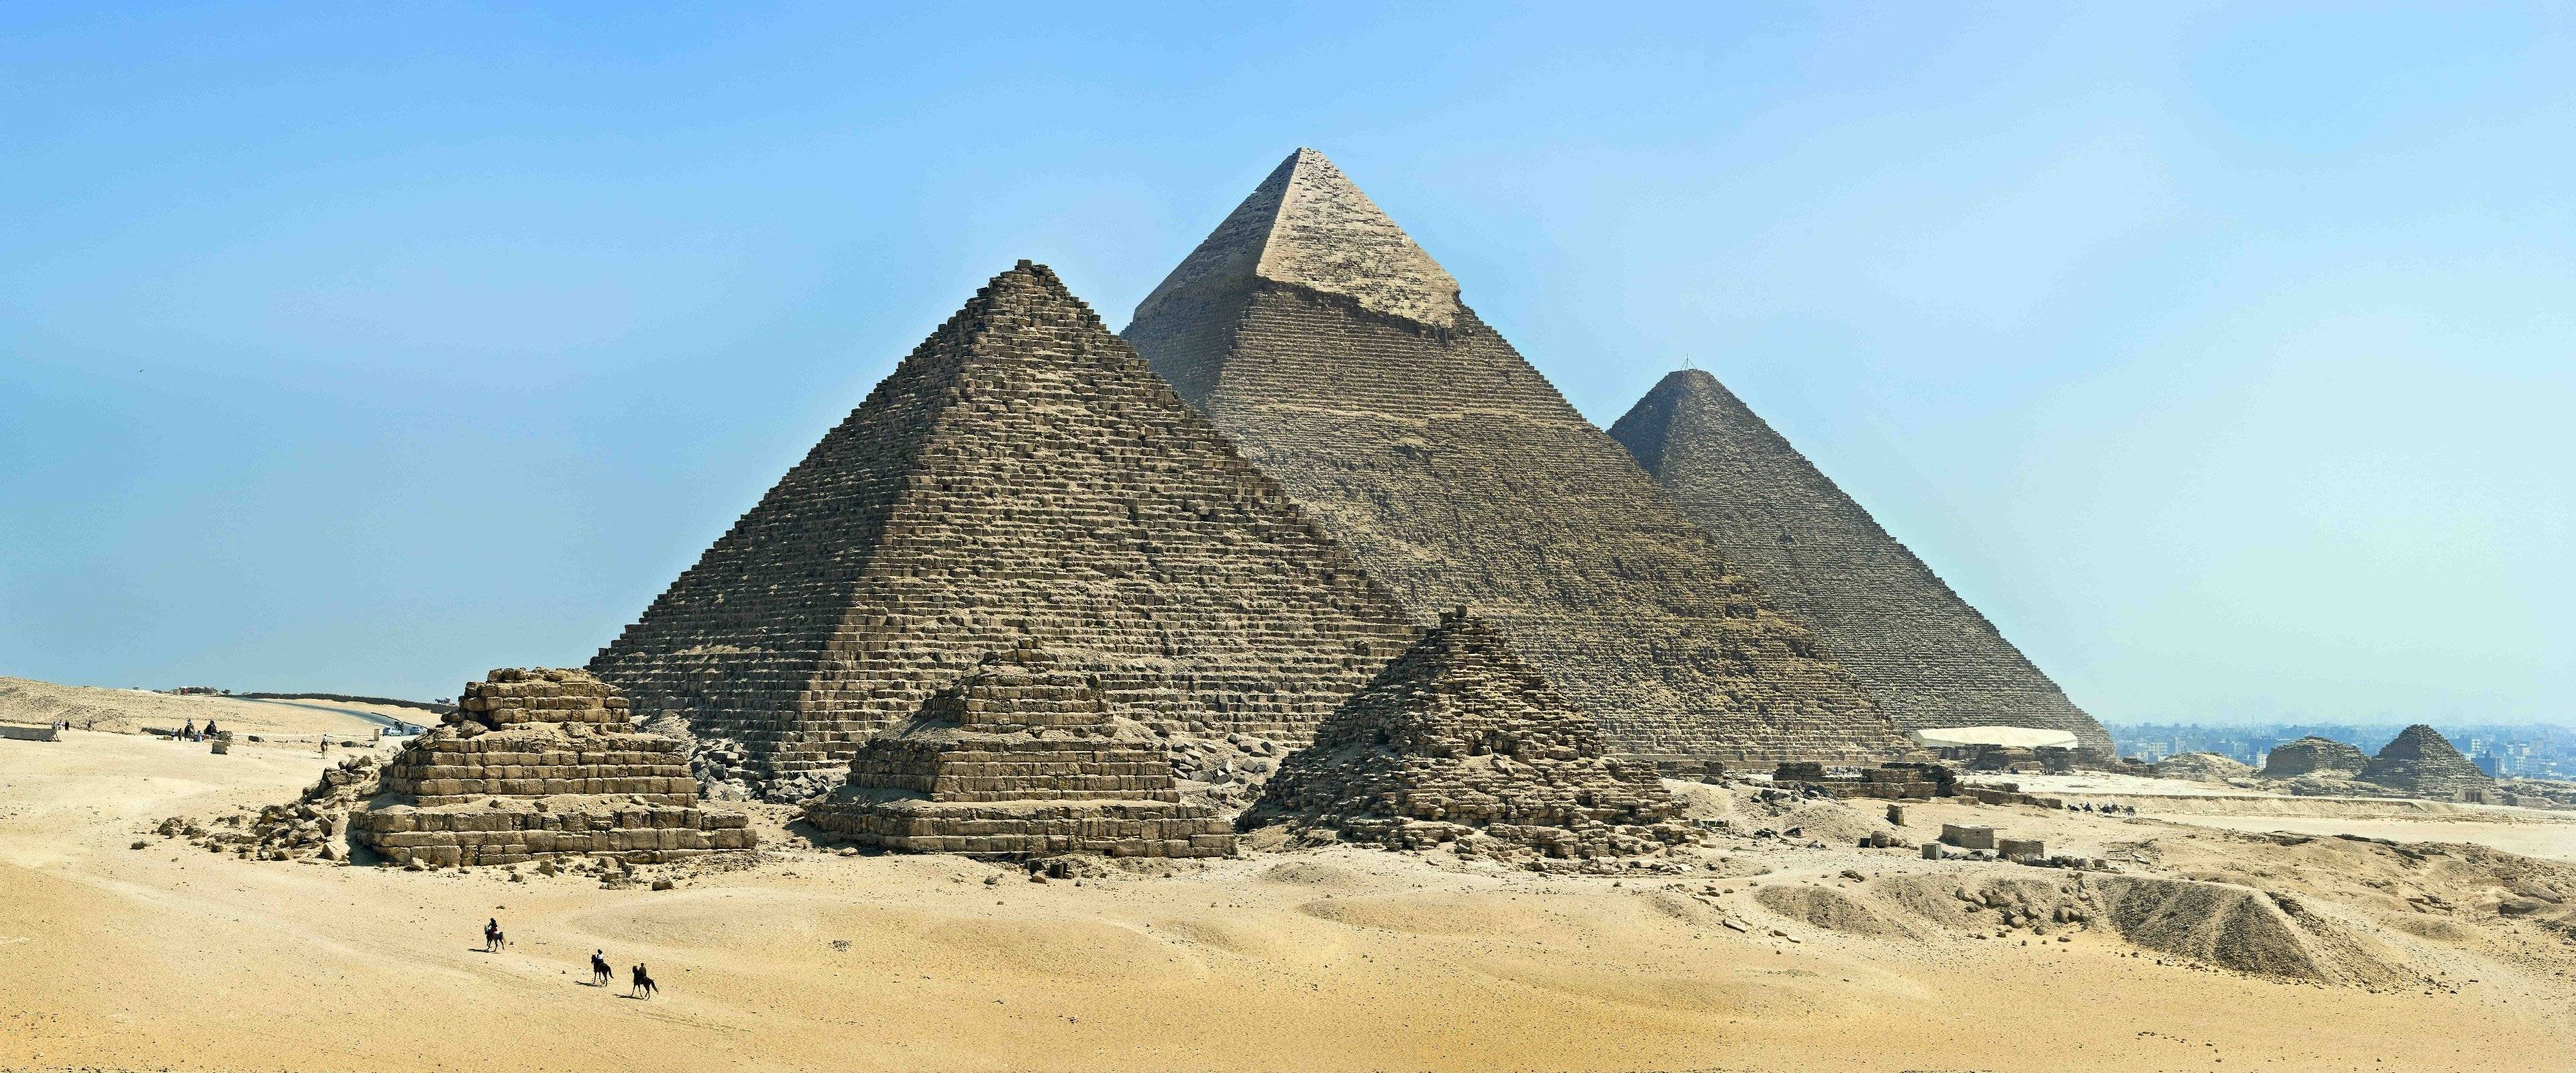 Alla scoperta della piana di Giza e delle sue meraviglie